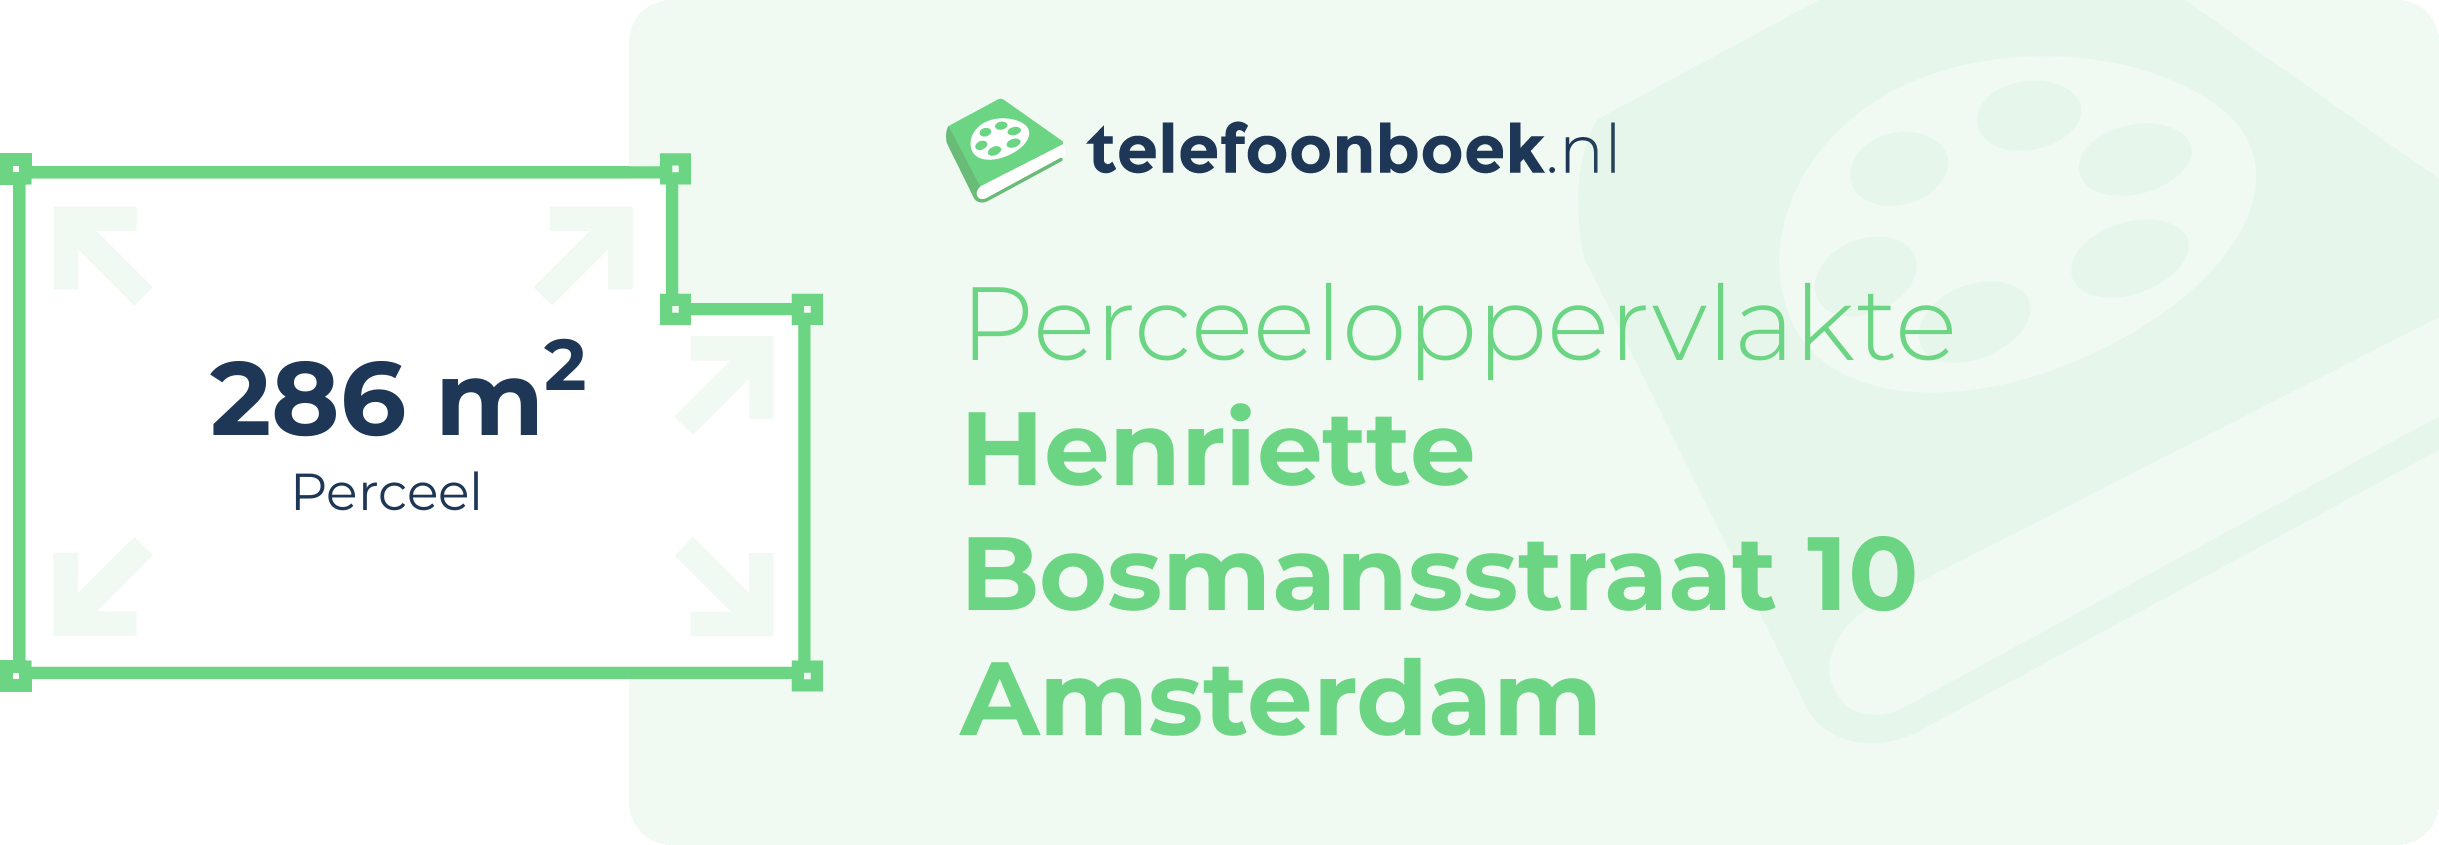 Perceeloppervlakte Henriette Bosmansstraat 10 Amsterdam